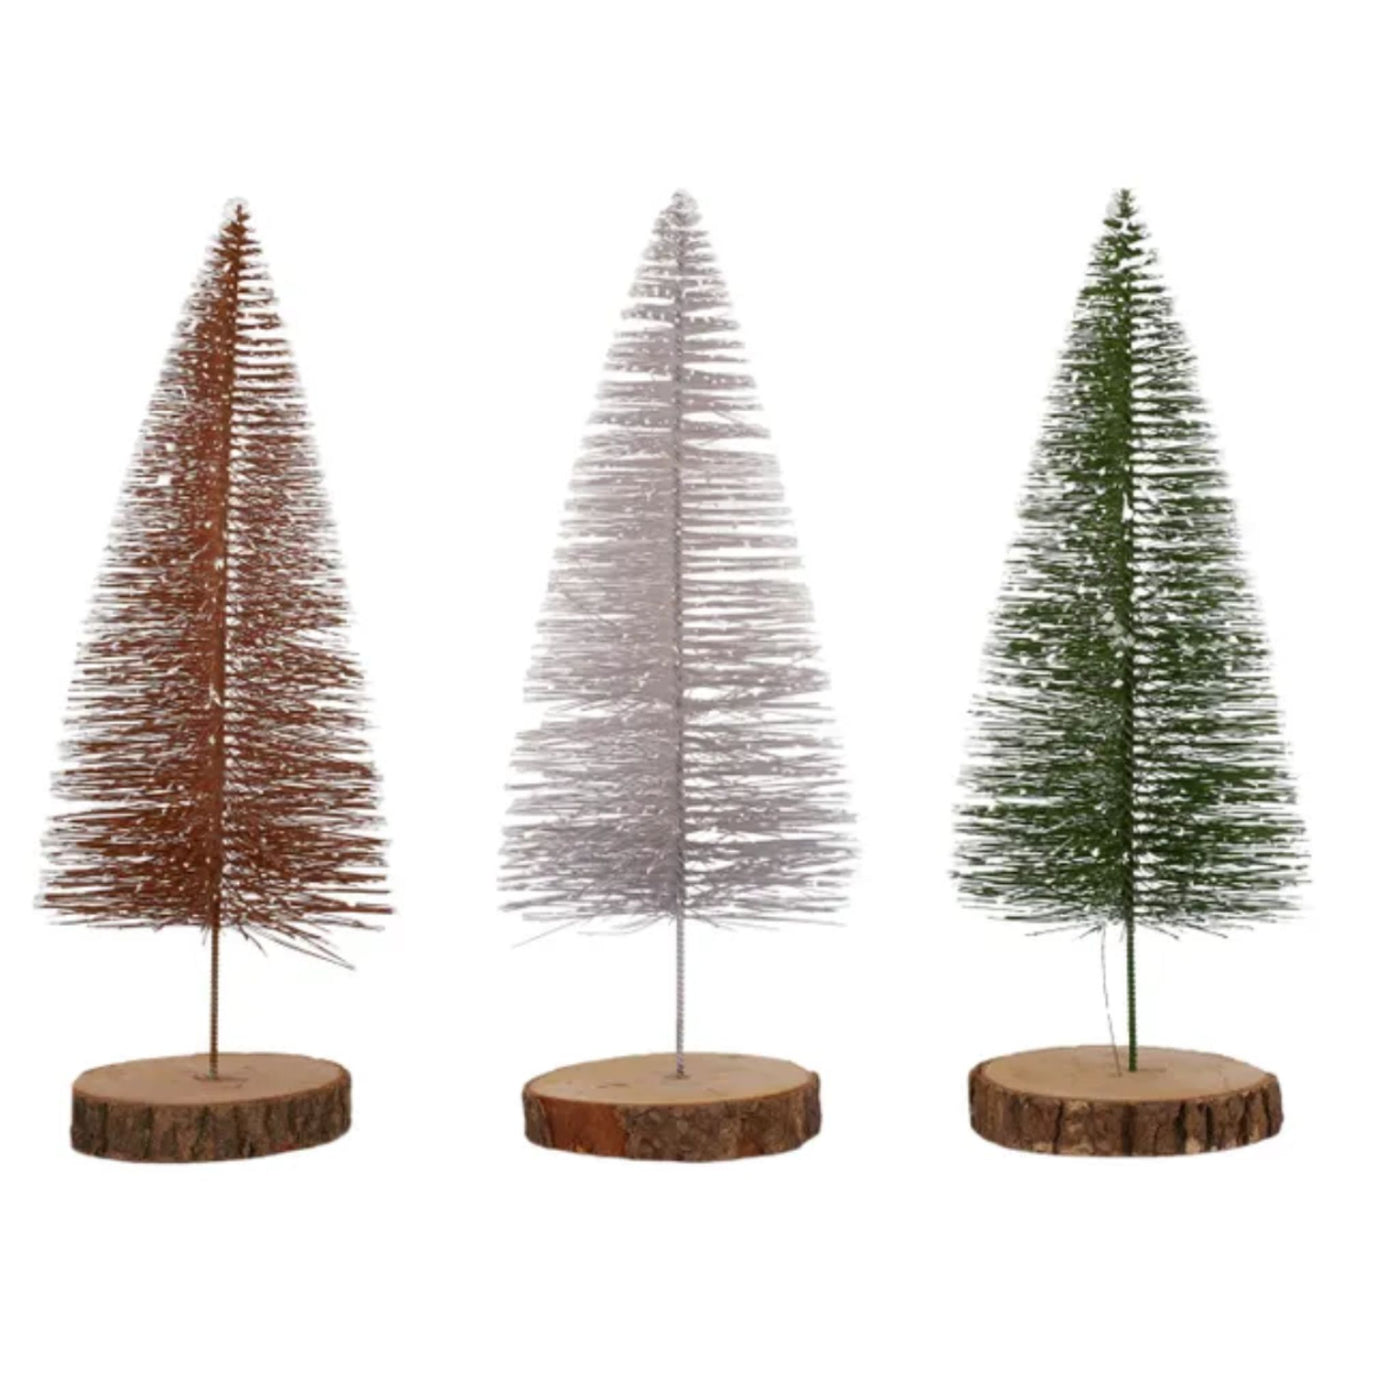 Decorative Christmas Pine Tree